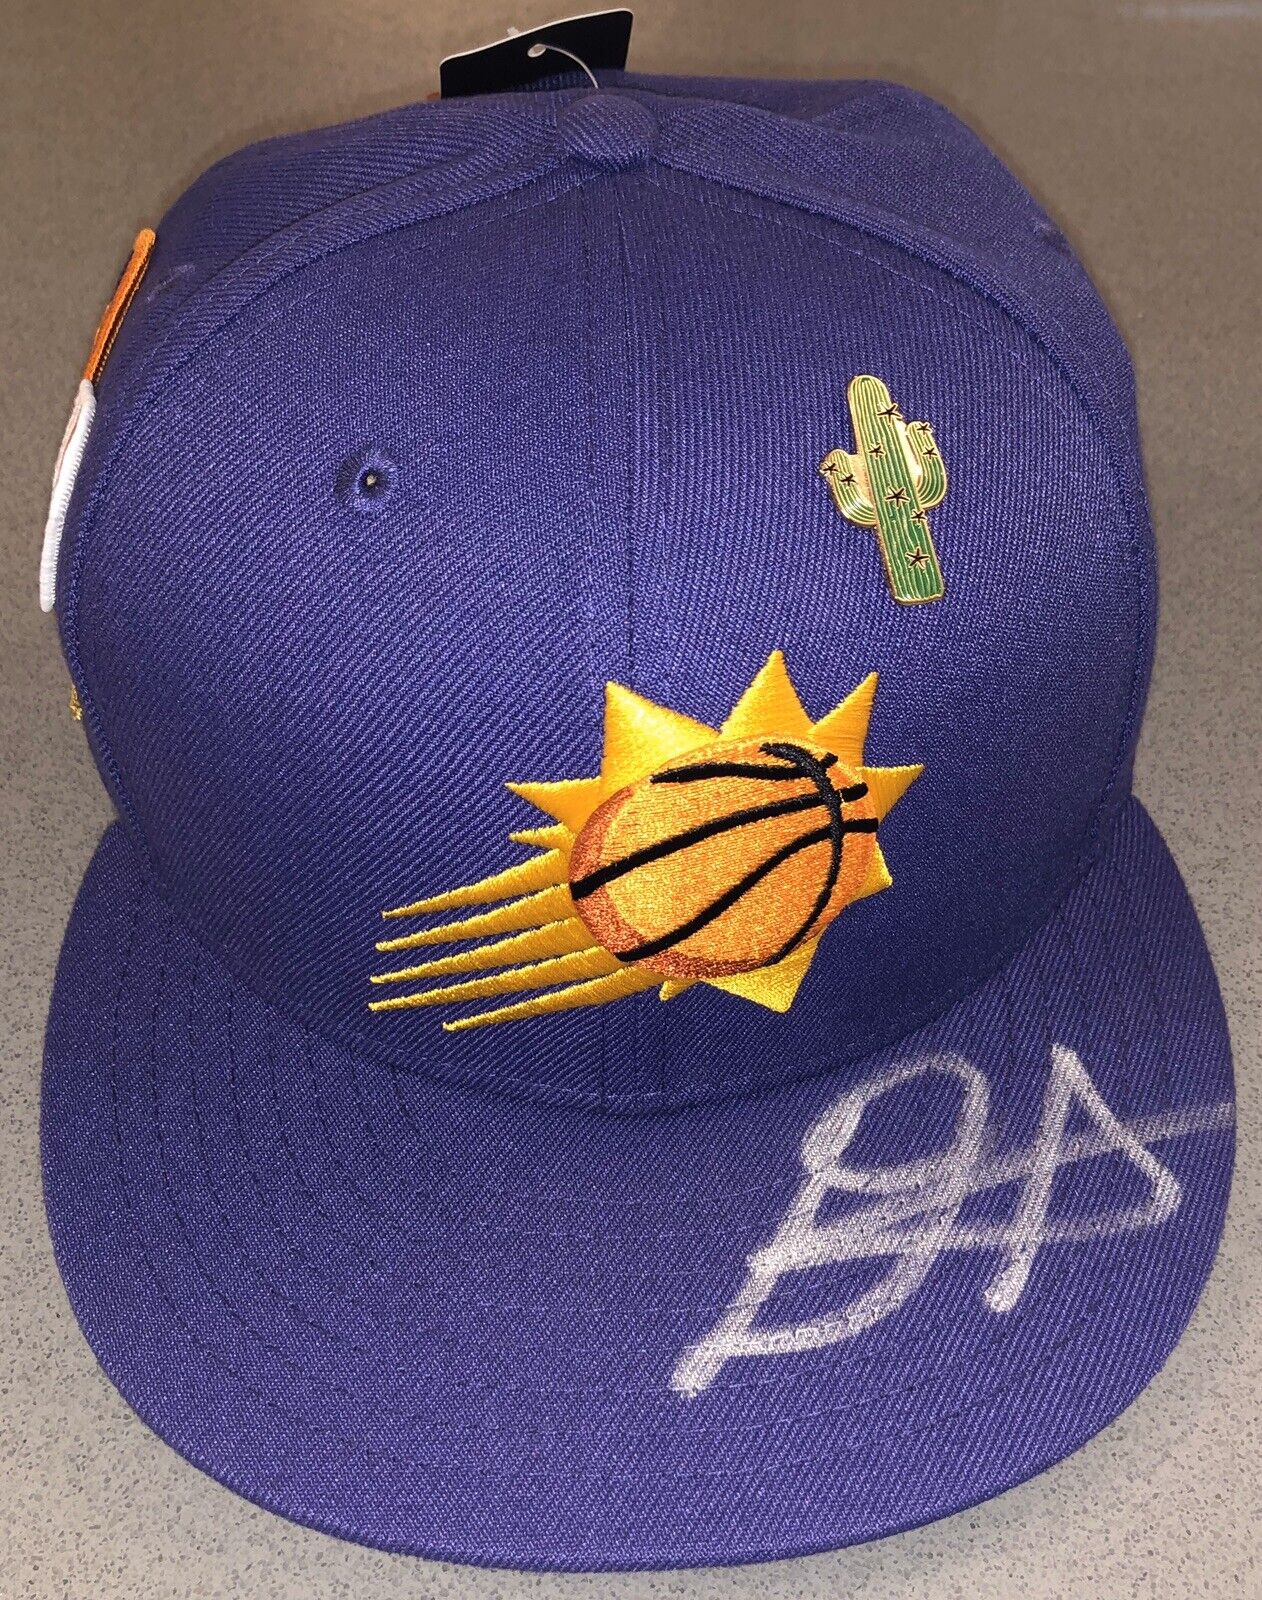 Deandre Ayton Autograph Phoenix Suns New Era Authentic Draft Hat Signed Steiner